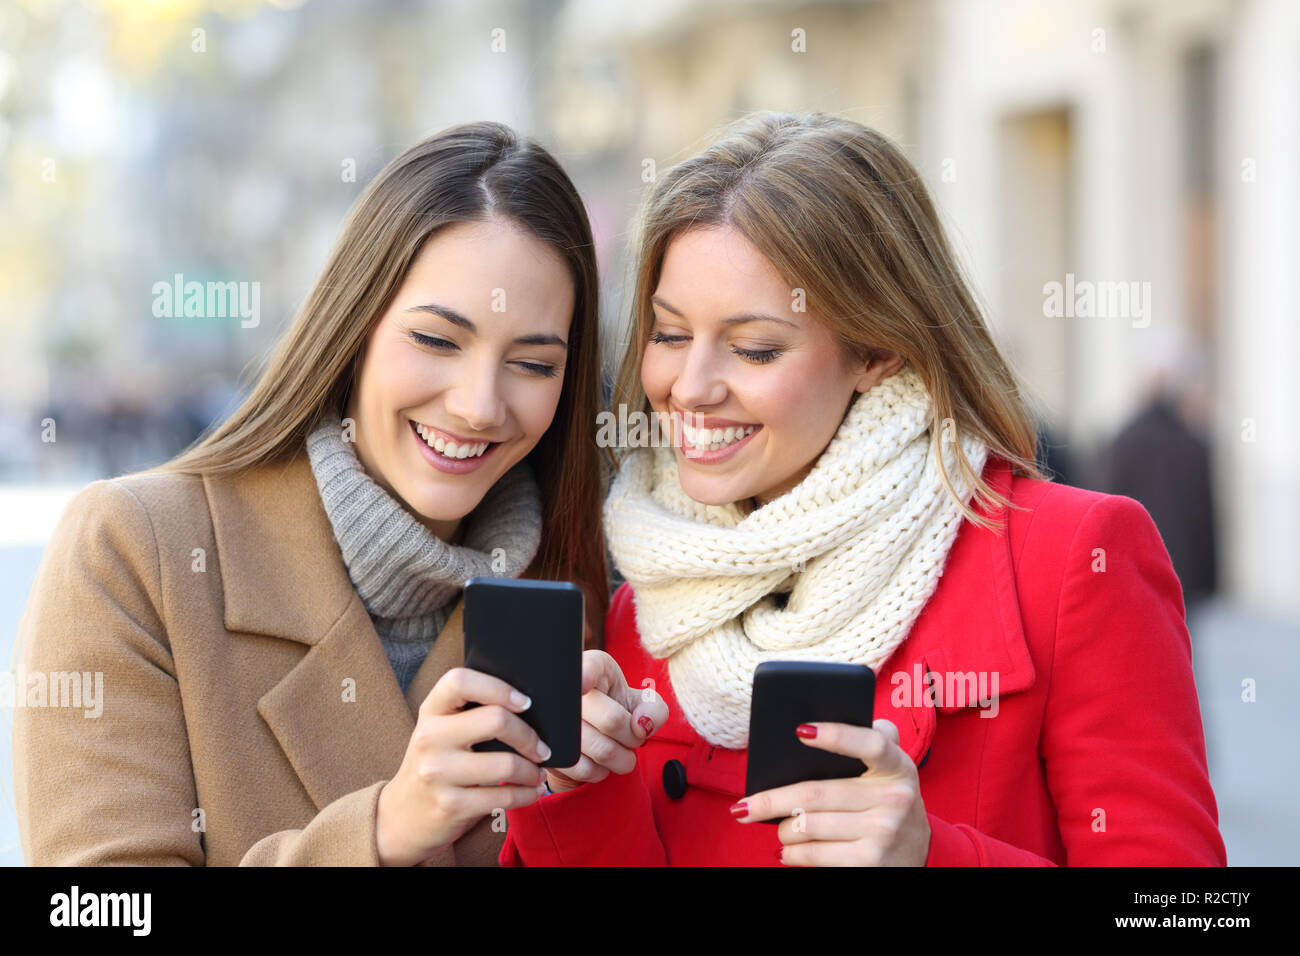 Les amis consulting smart phone content dans la rue en hiver Banque D'Images